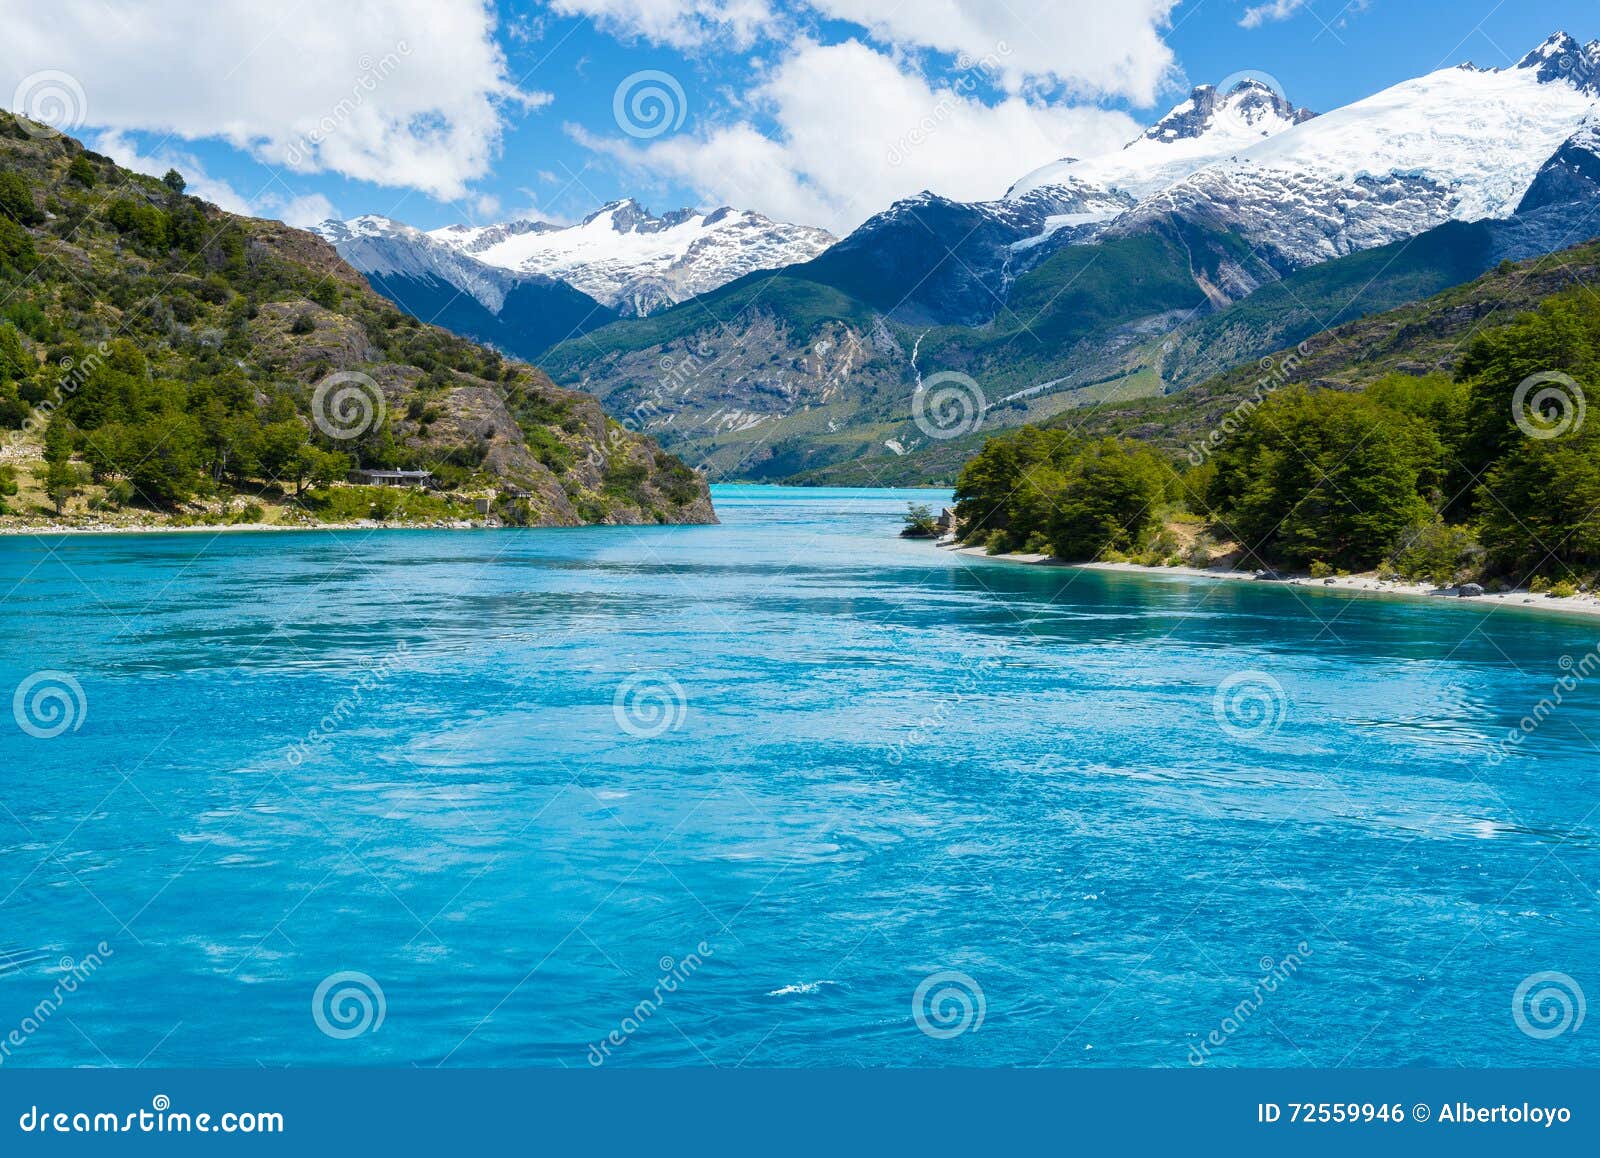 lake general carrera in patagonia, chile